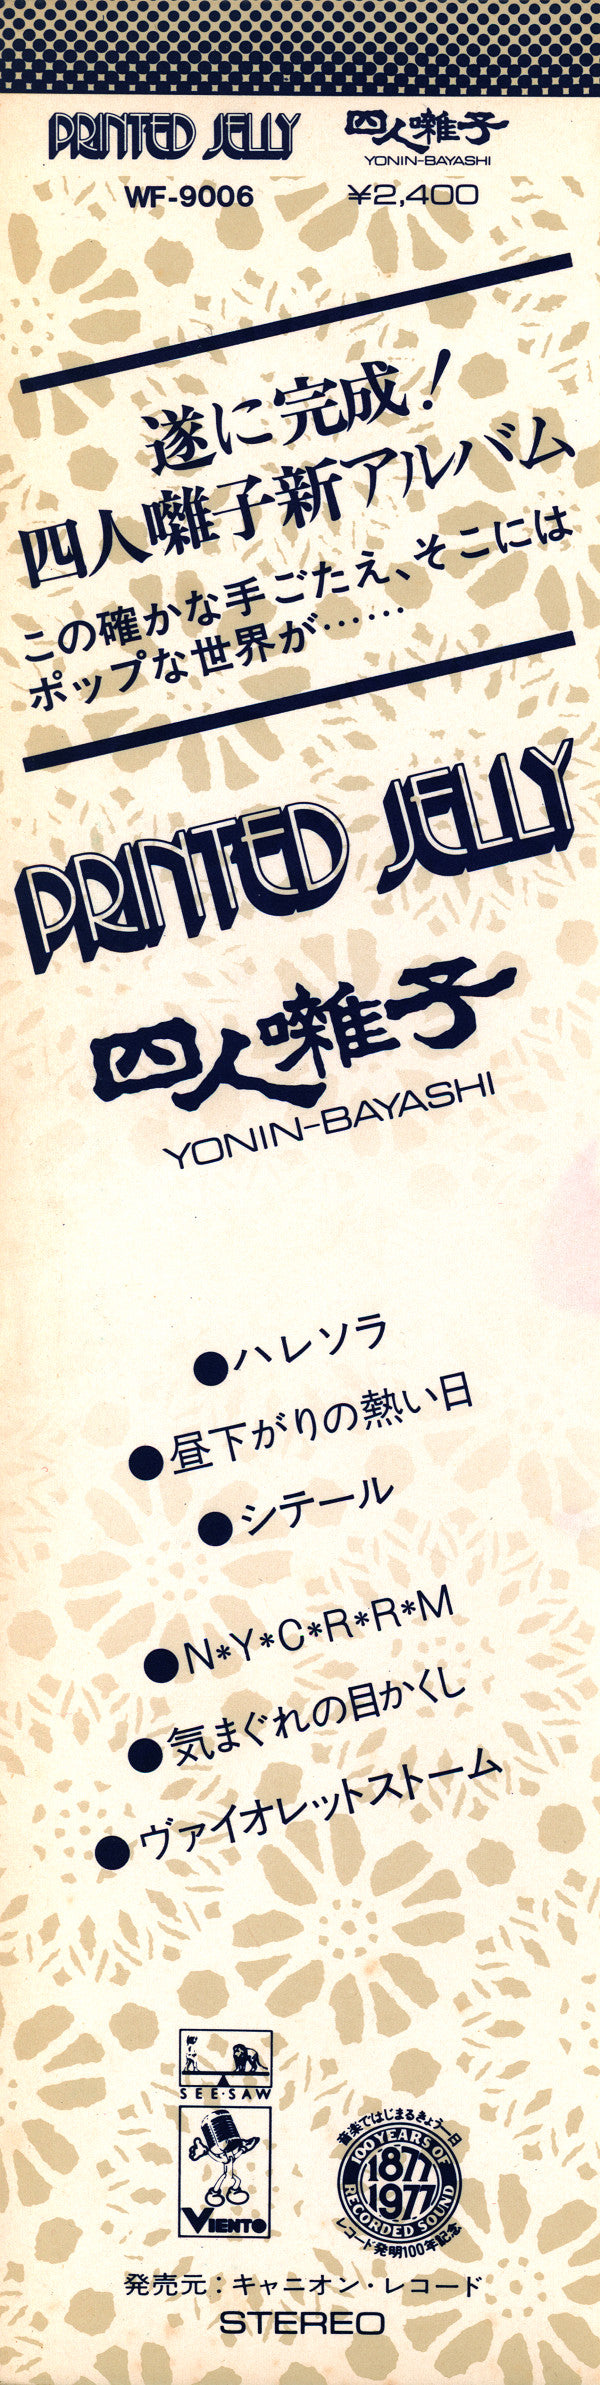 Yonin-Bayashi* : Printed Jelly (LP, Album)